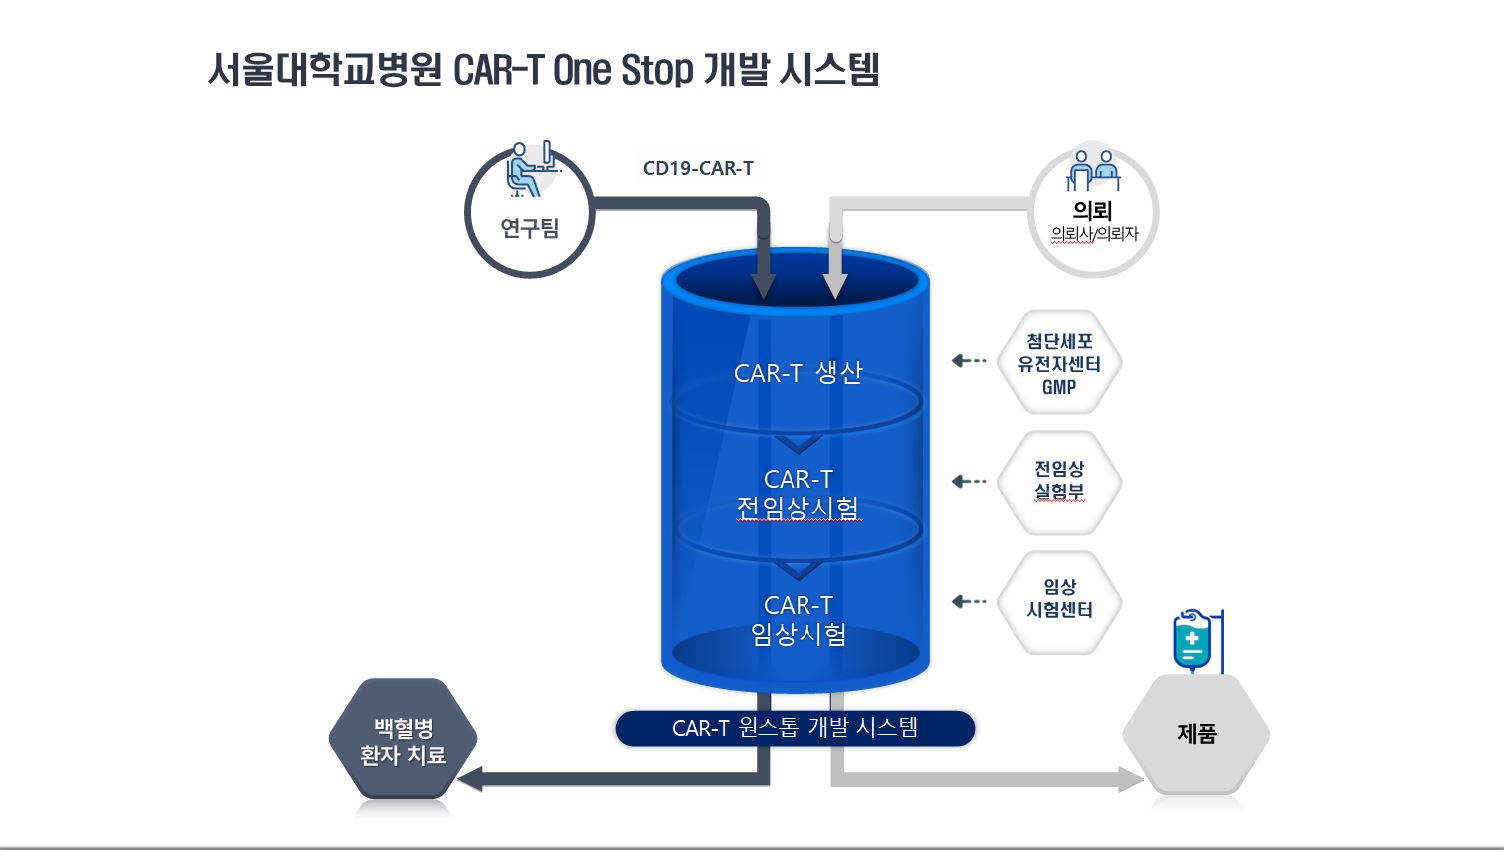 서울대학교병원 CAR-R One Stop 개발 시스템